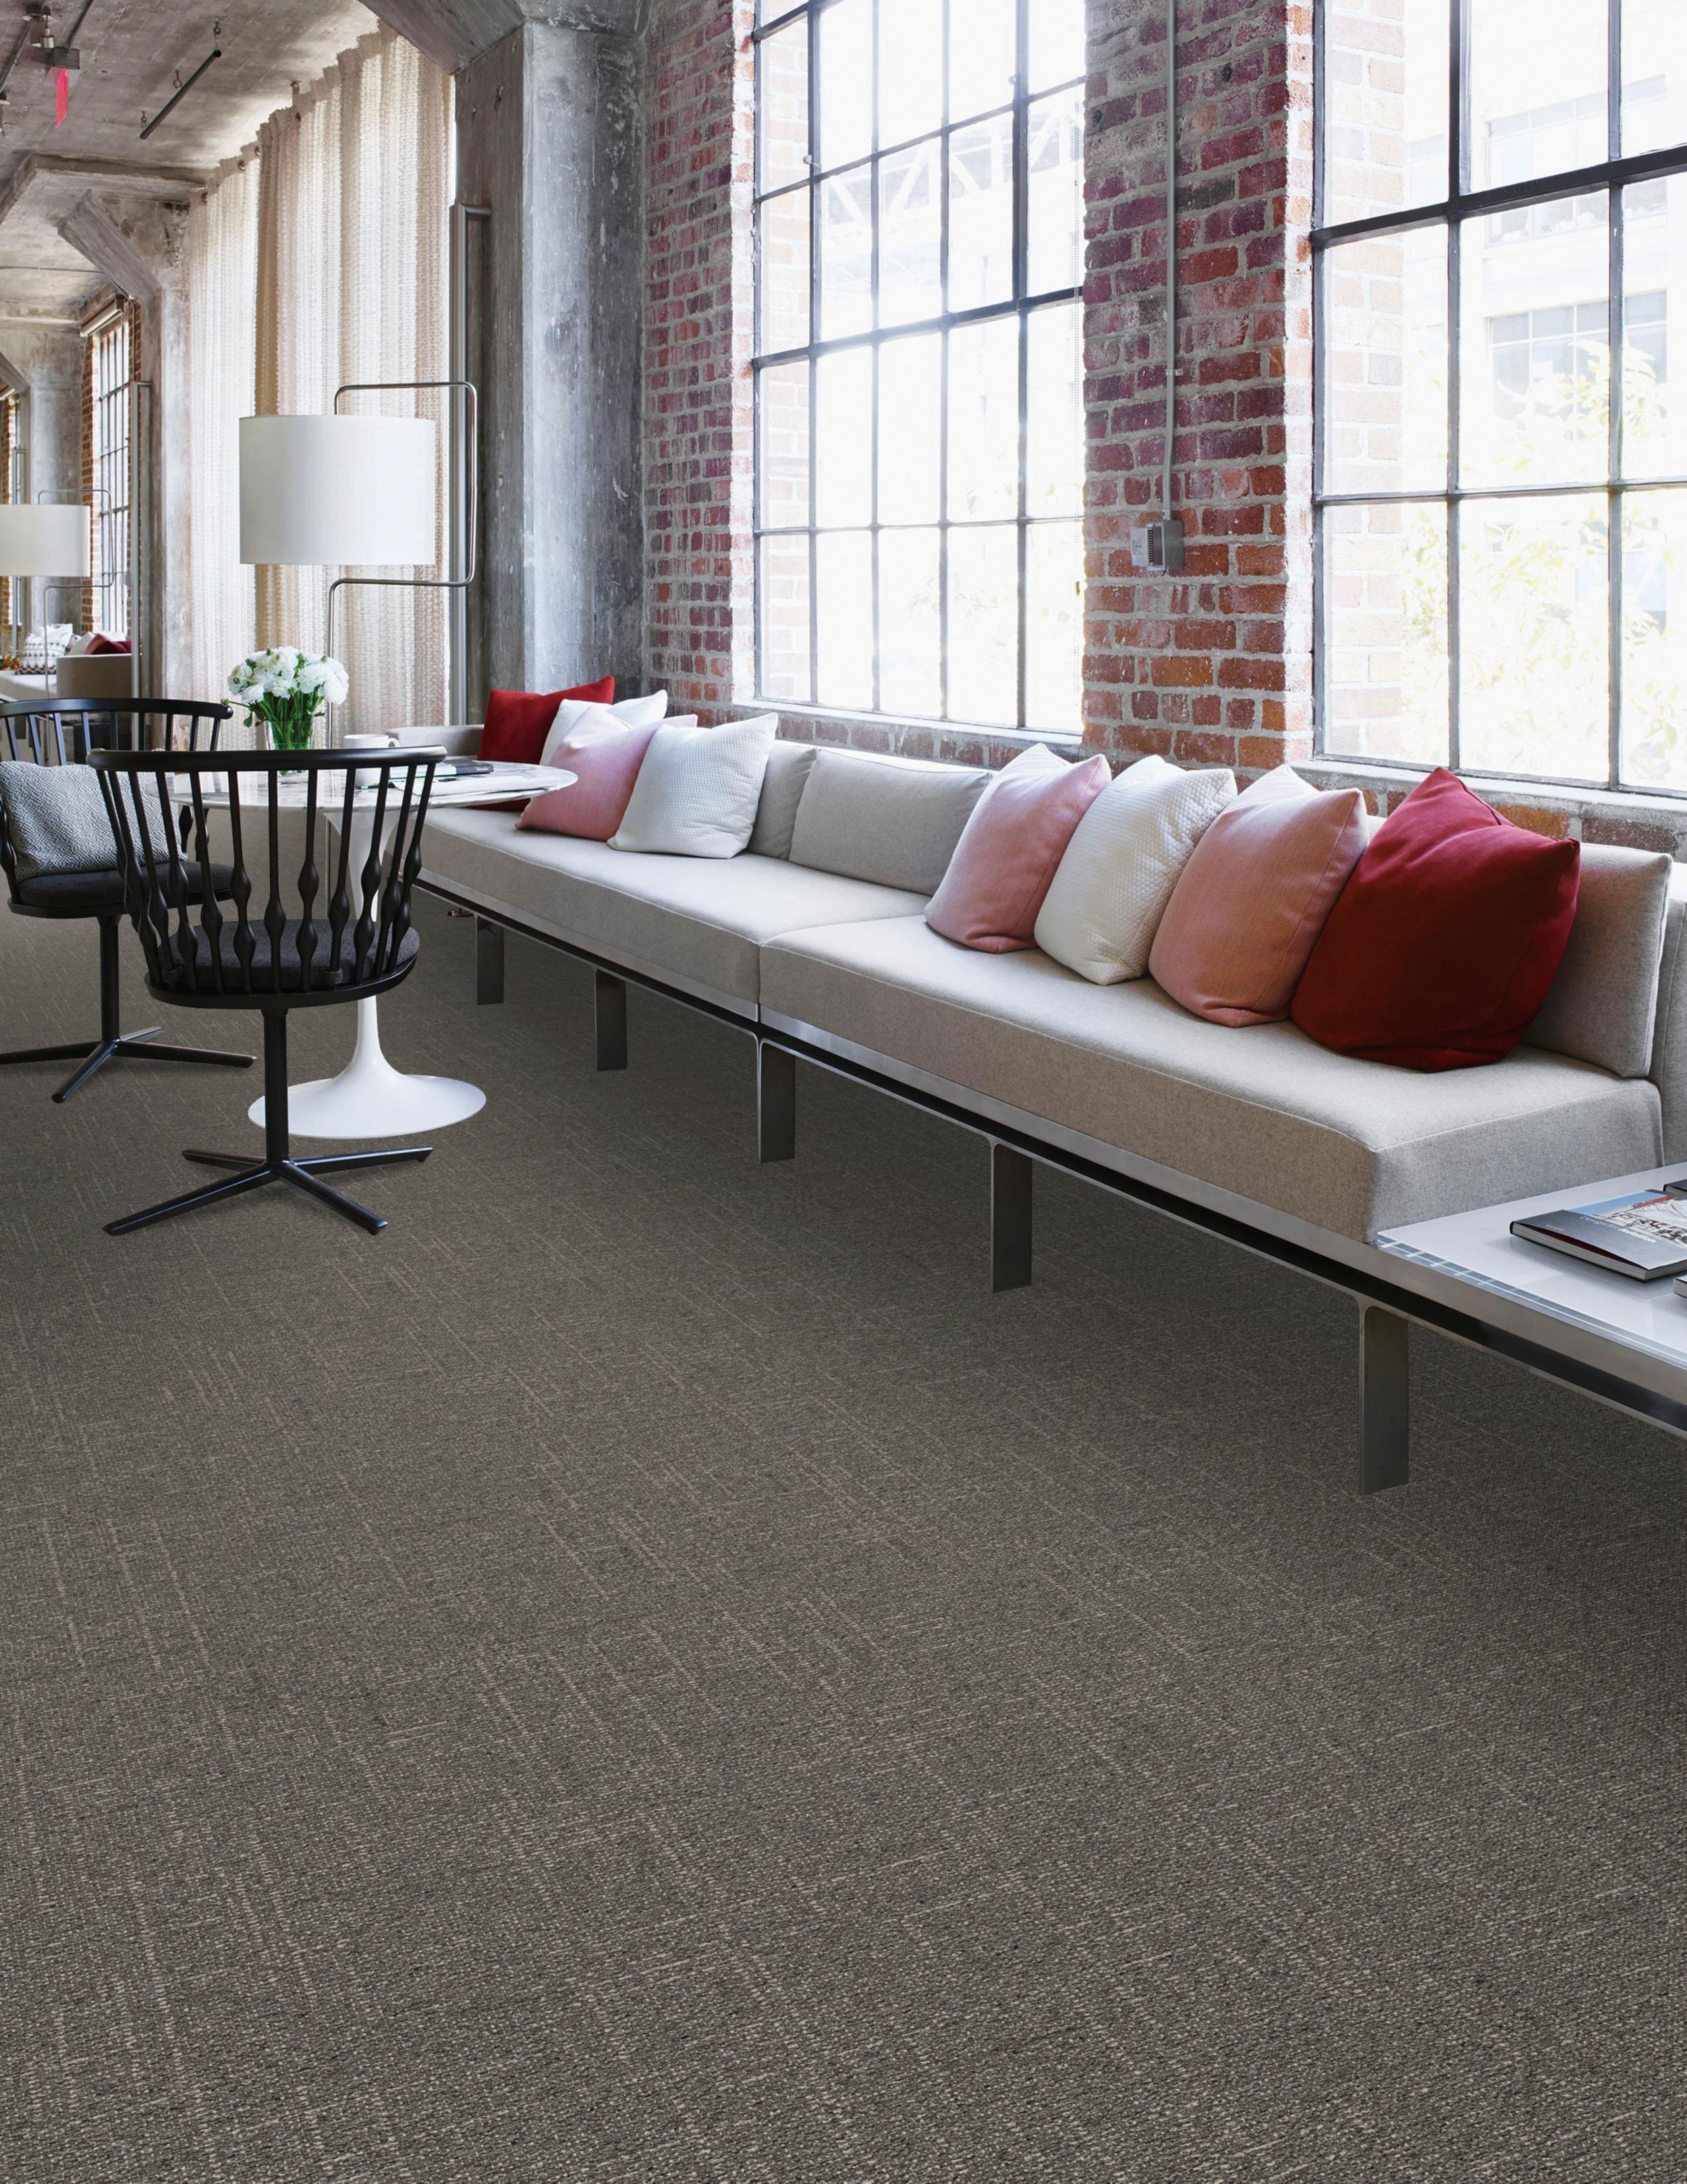 Interface DL901 carpet tile in public space with long couch numéro d’image 3